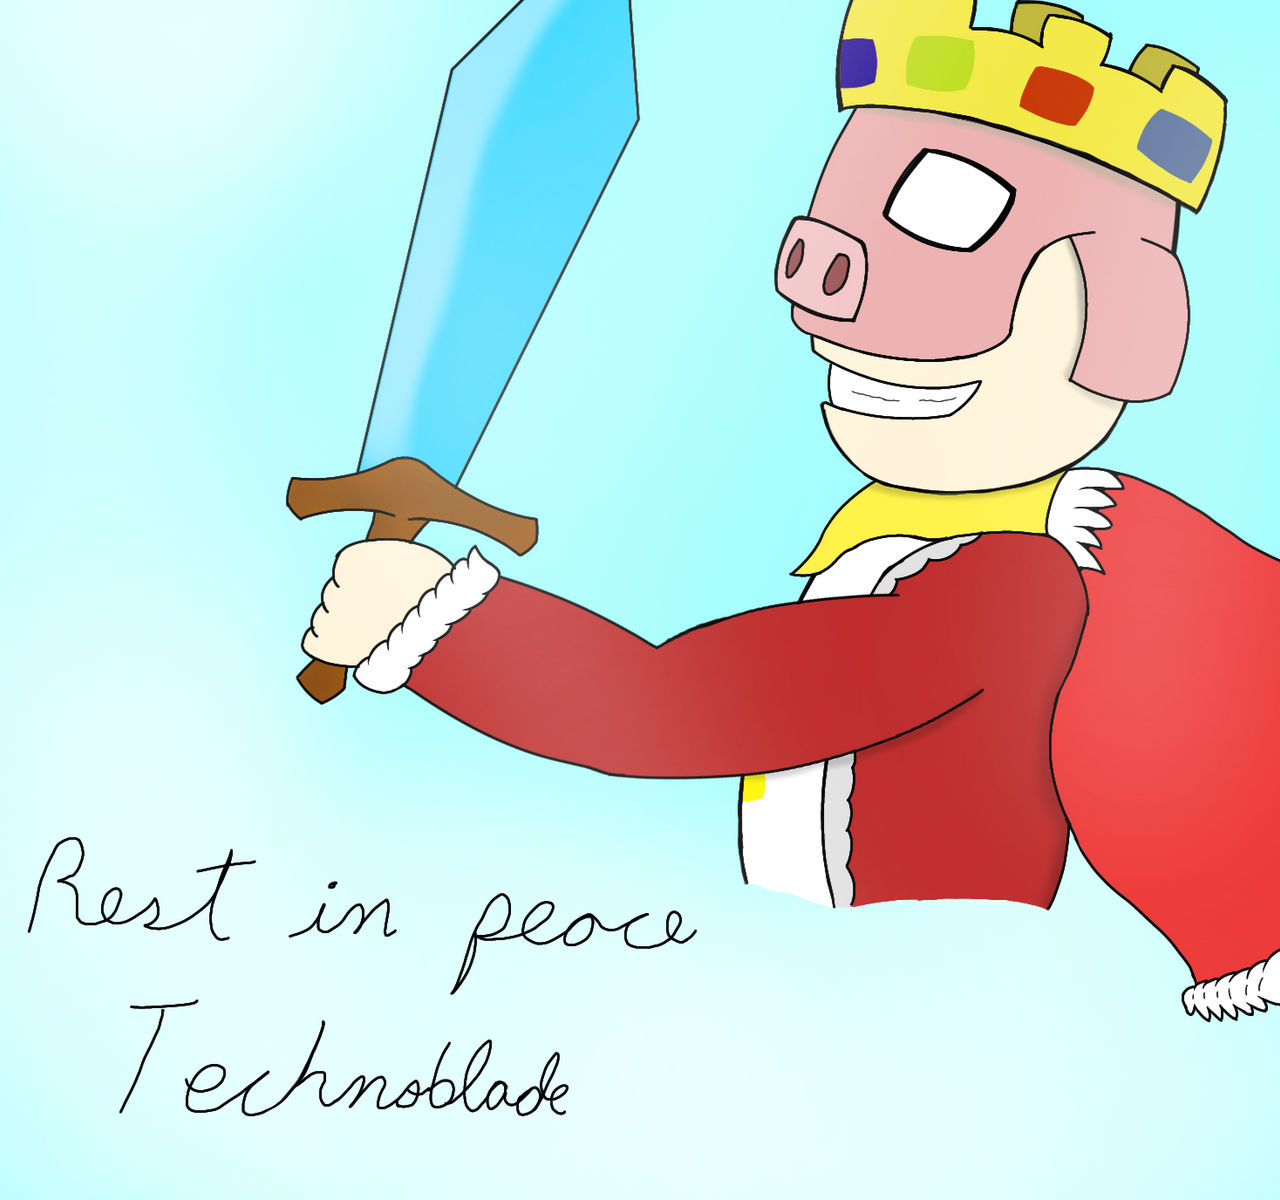 RIP Technoblade Art #2 by beeblbob on DeviantArt